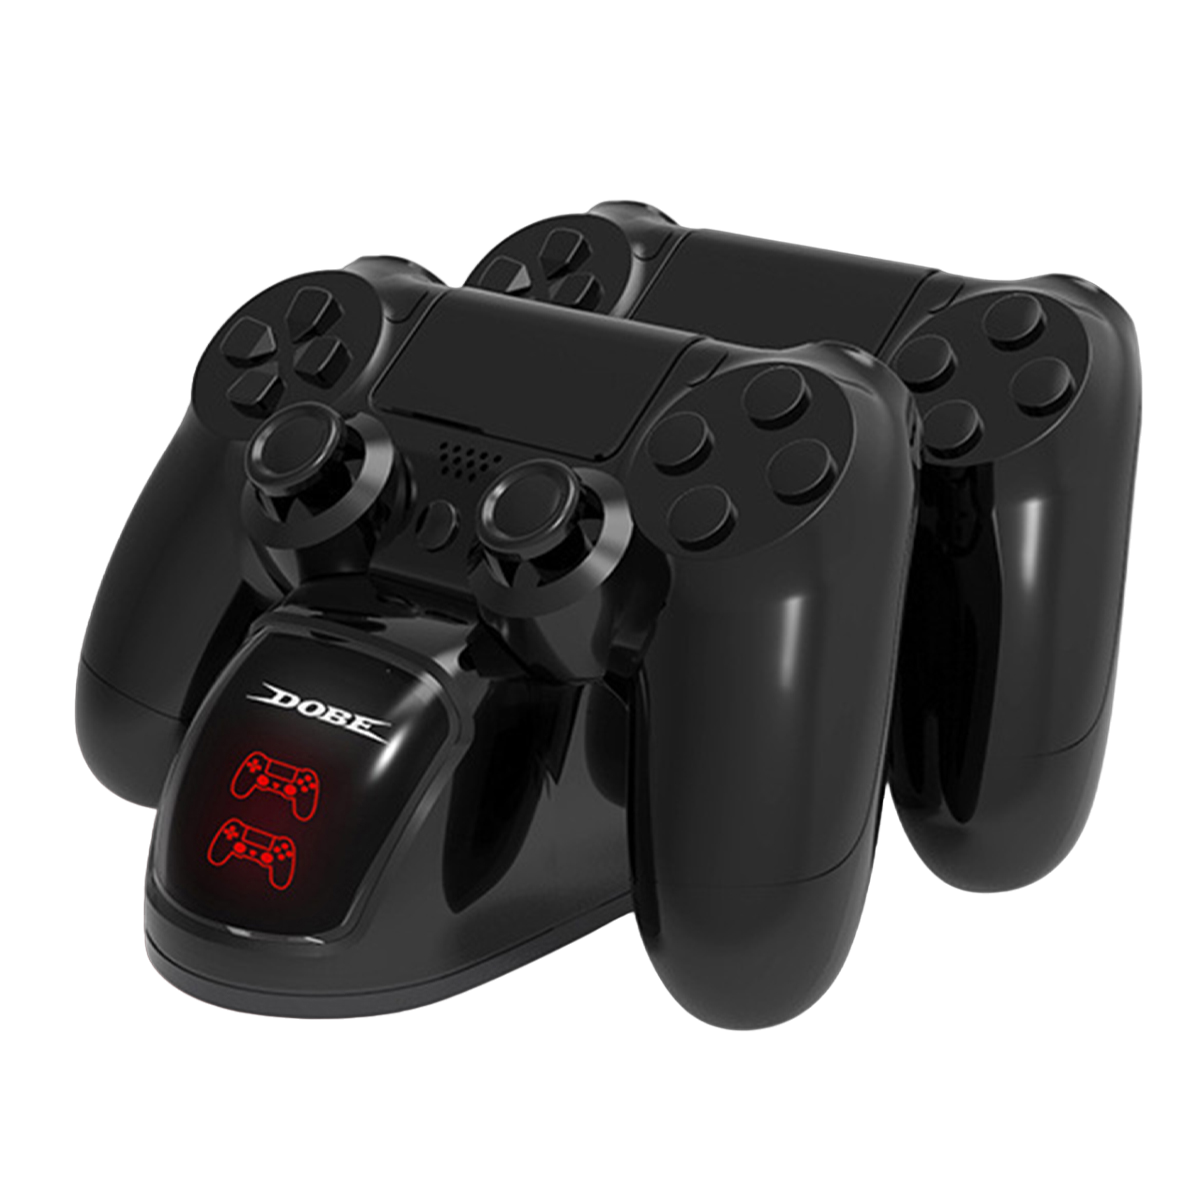 schwarz PS4/Pro/Slim Gamepad, Station Ladestation,Ladegerät PS4 4-Controller, für PlayStation RESPIEL Controller